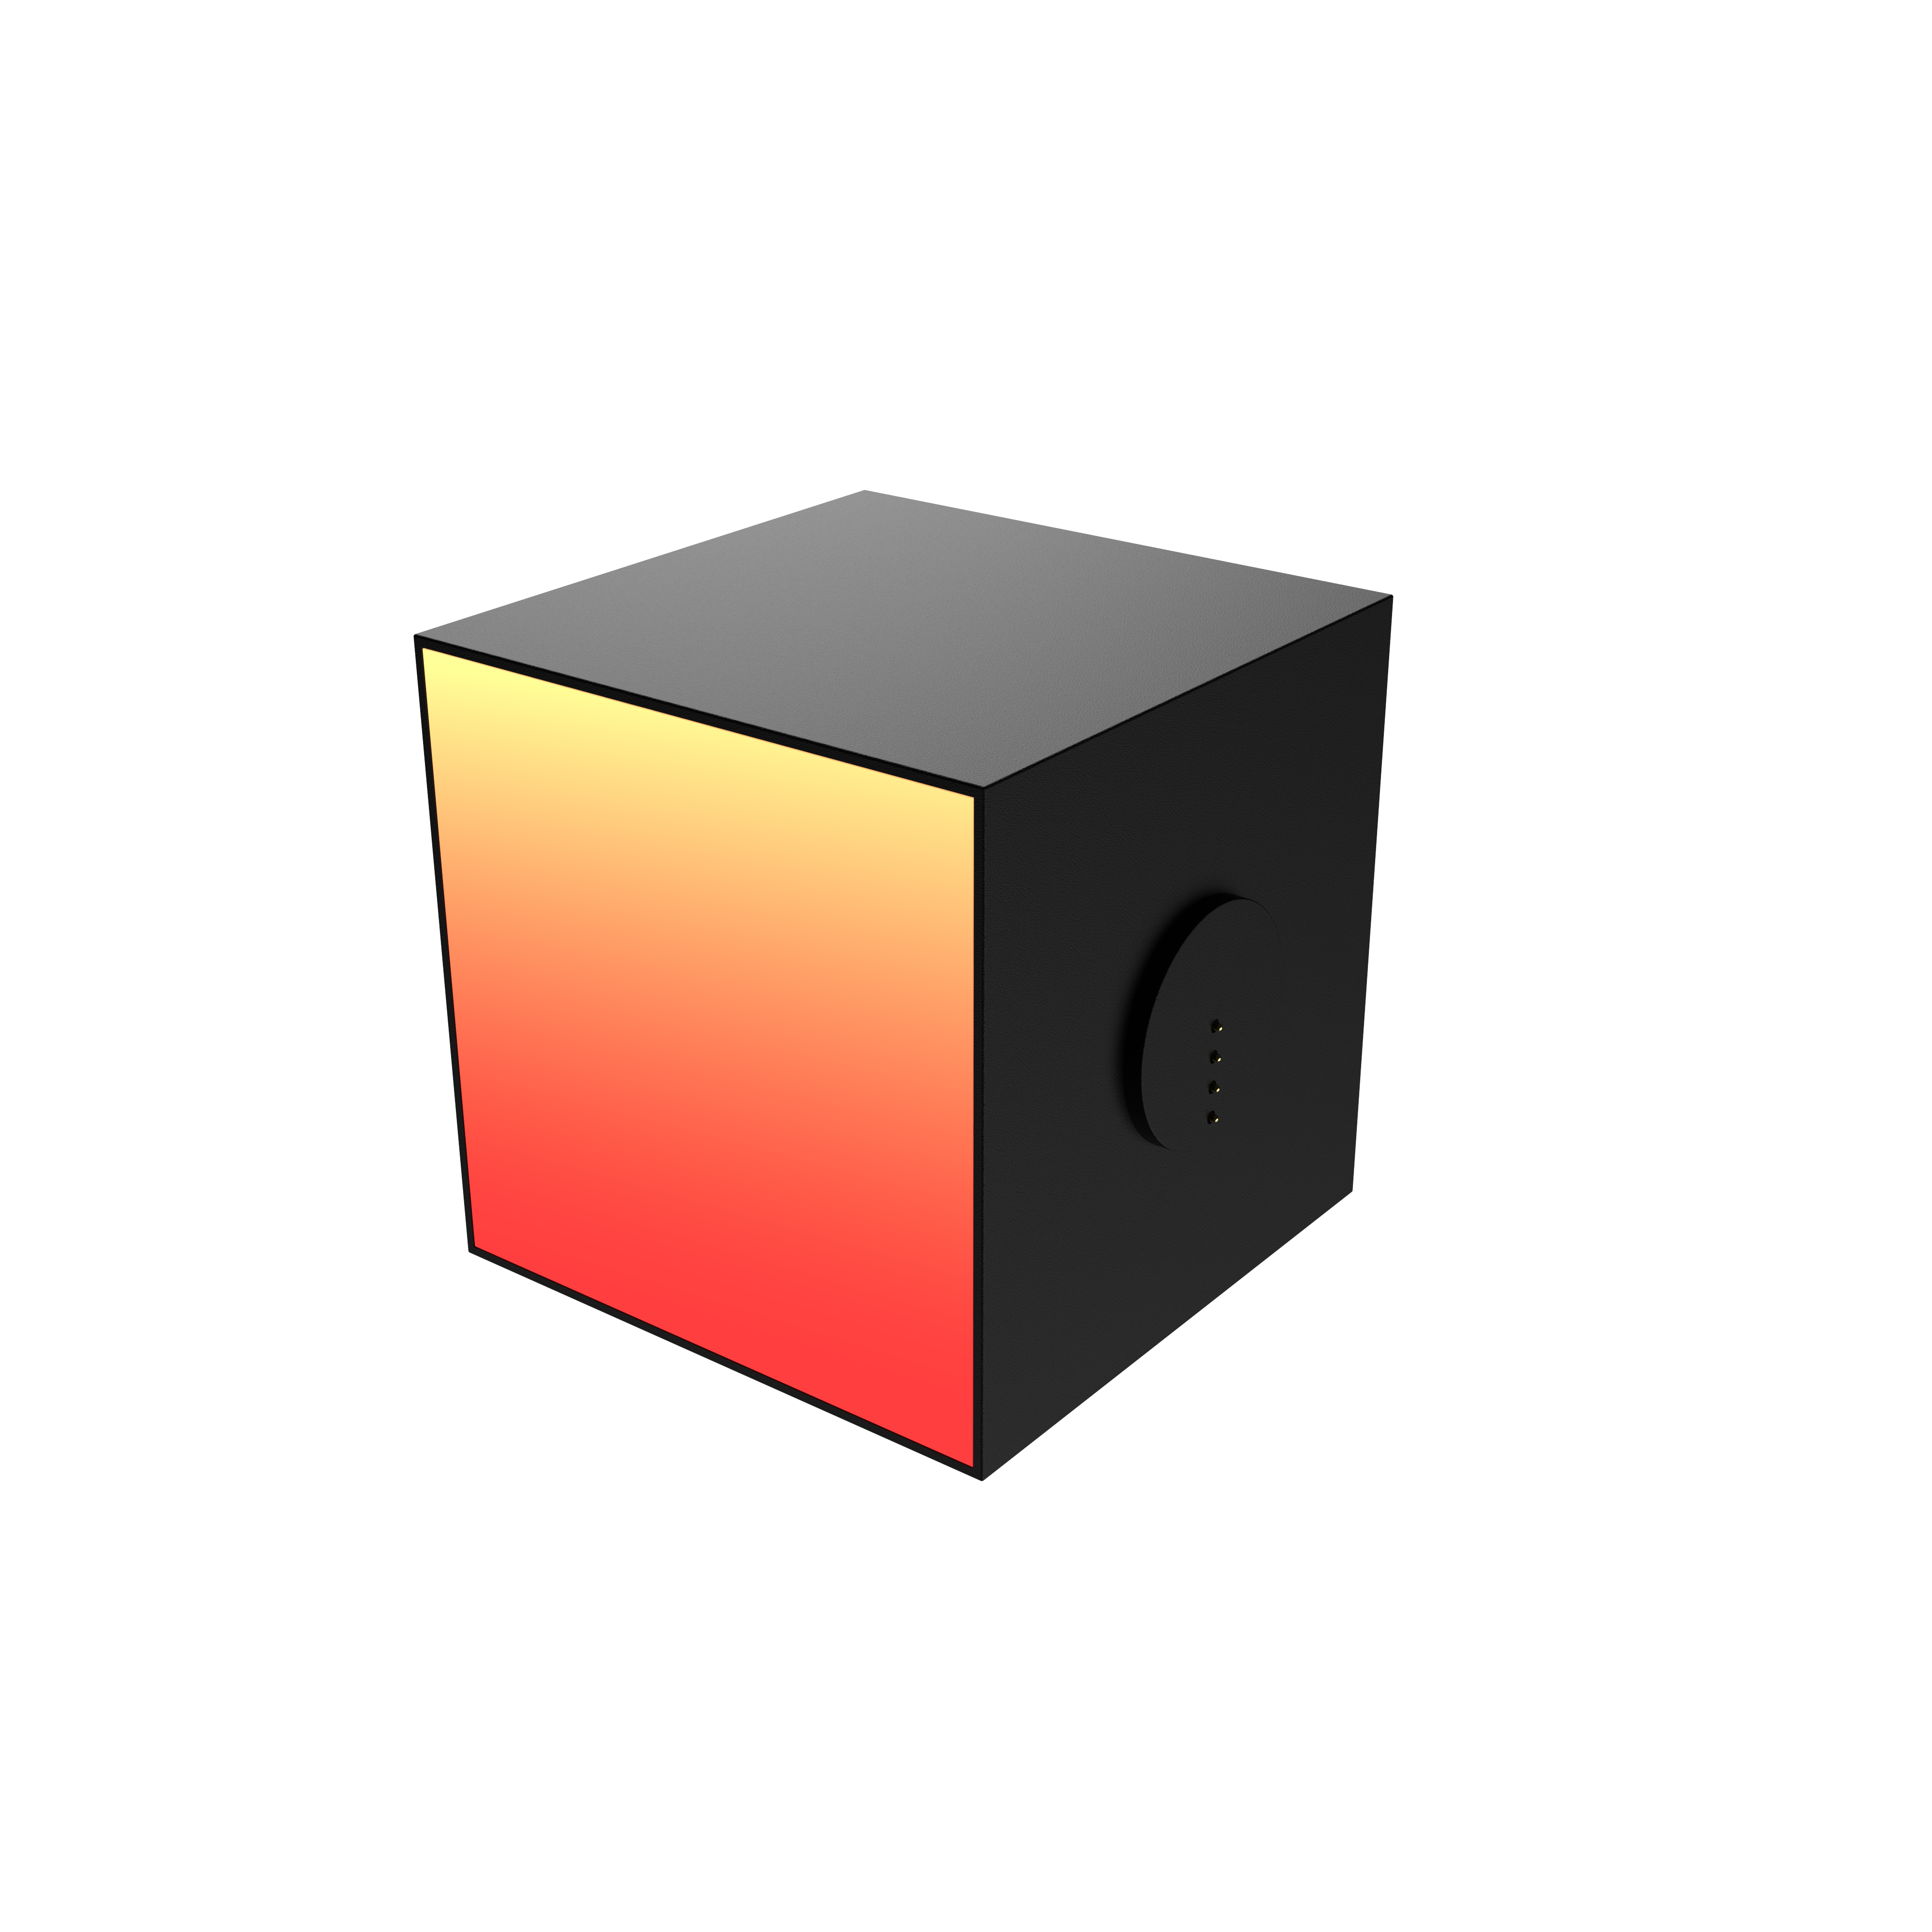 YEELIGHT Cube Smart Lamp - Light Gaming Cube Panel - Erweiterung WLAN